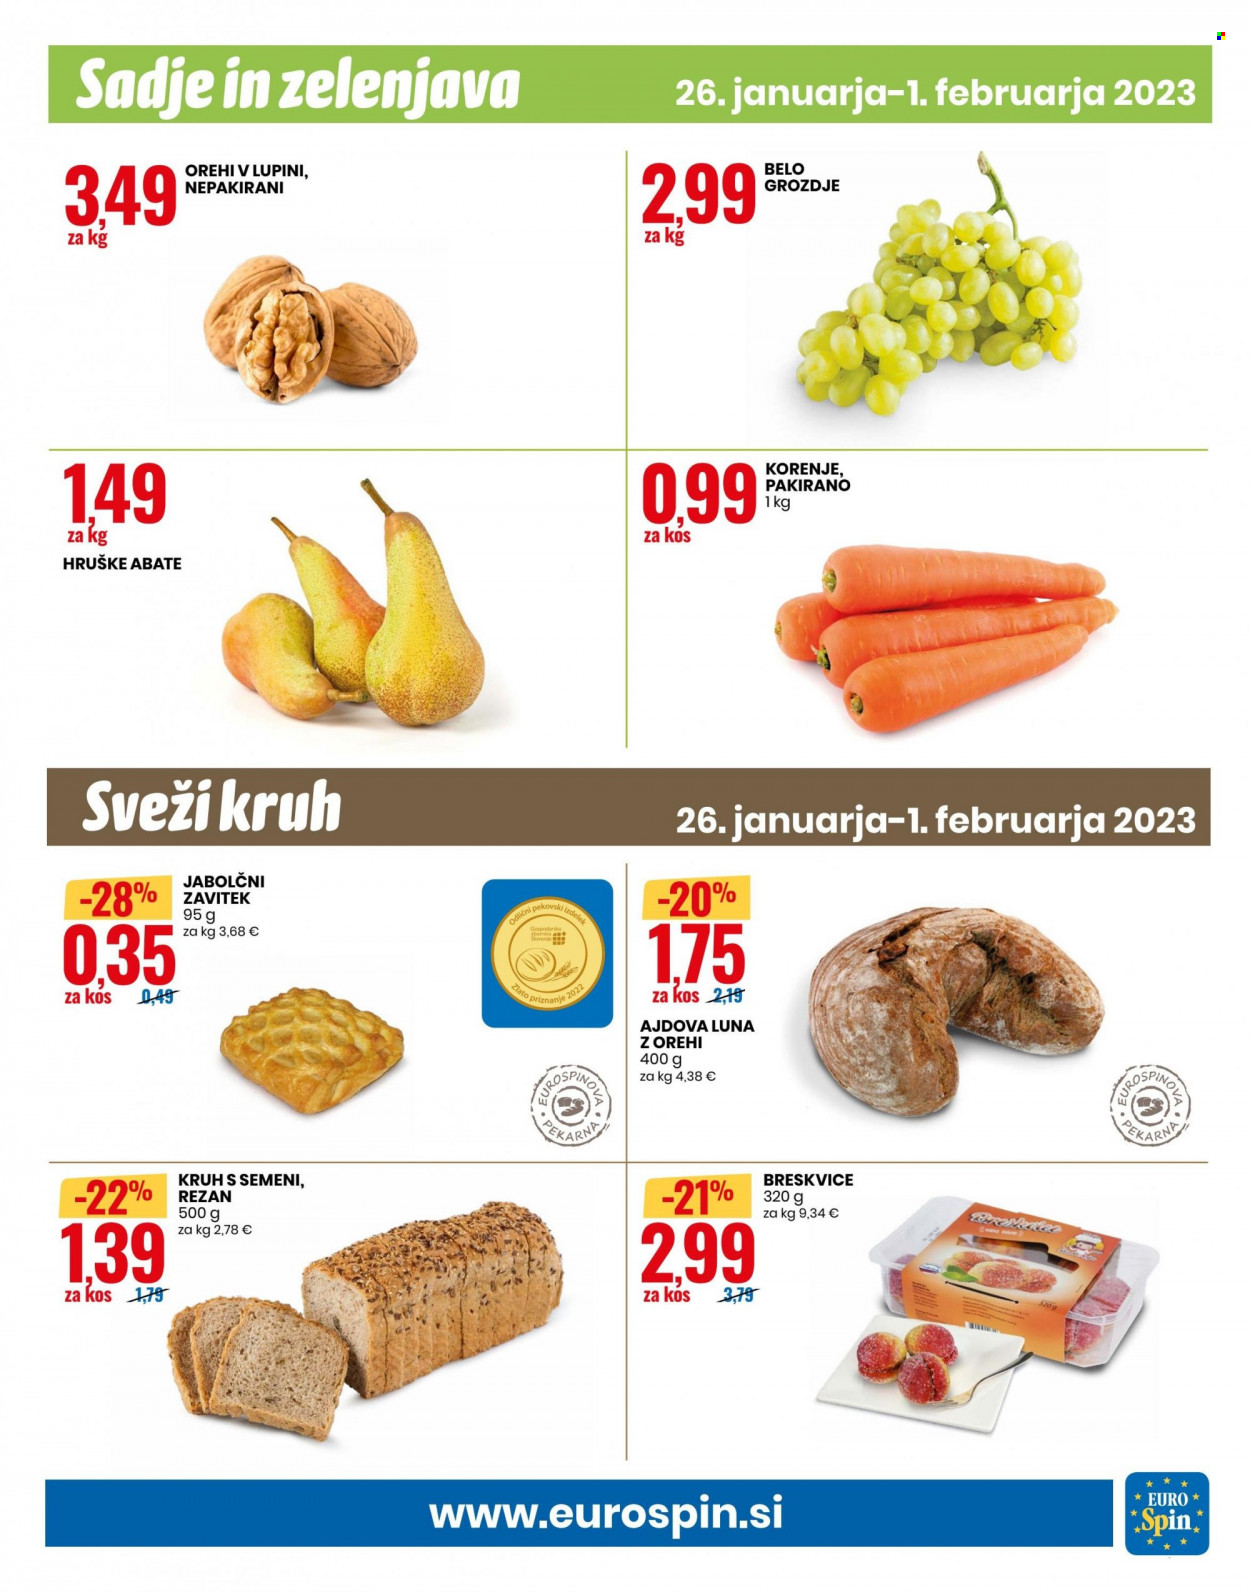 thumbnail - EuroSpin katalog - 26.1.2023 - 1.2.2023 - Ponudba izdelkov - belo grozdje, grozdje, hruške, kruh, korenje, orehi. Stran 9.